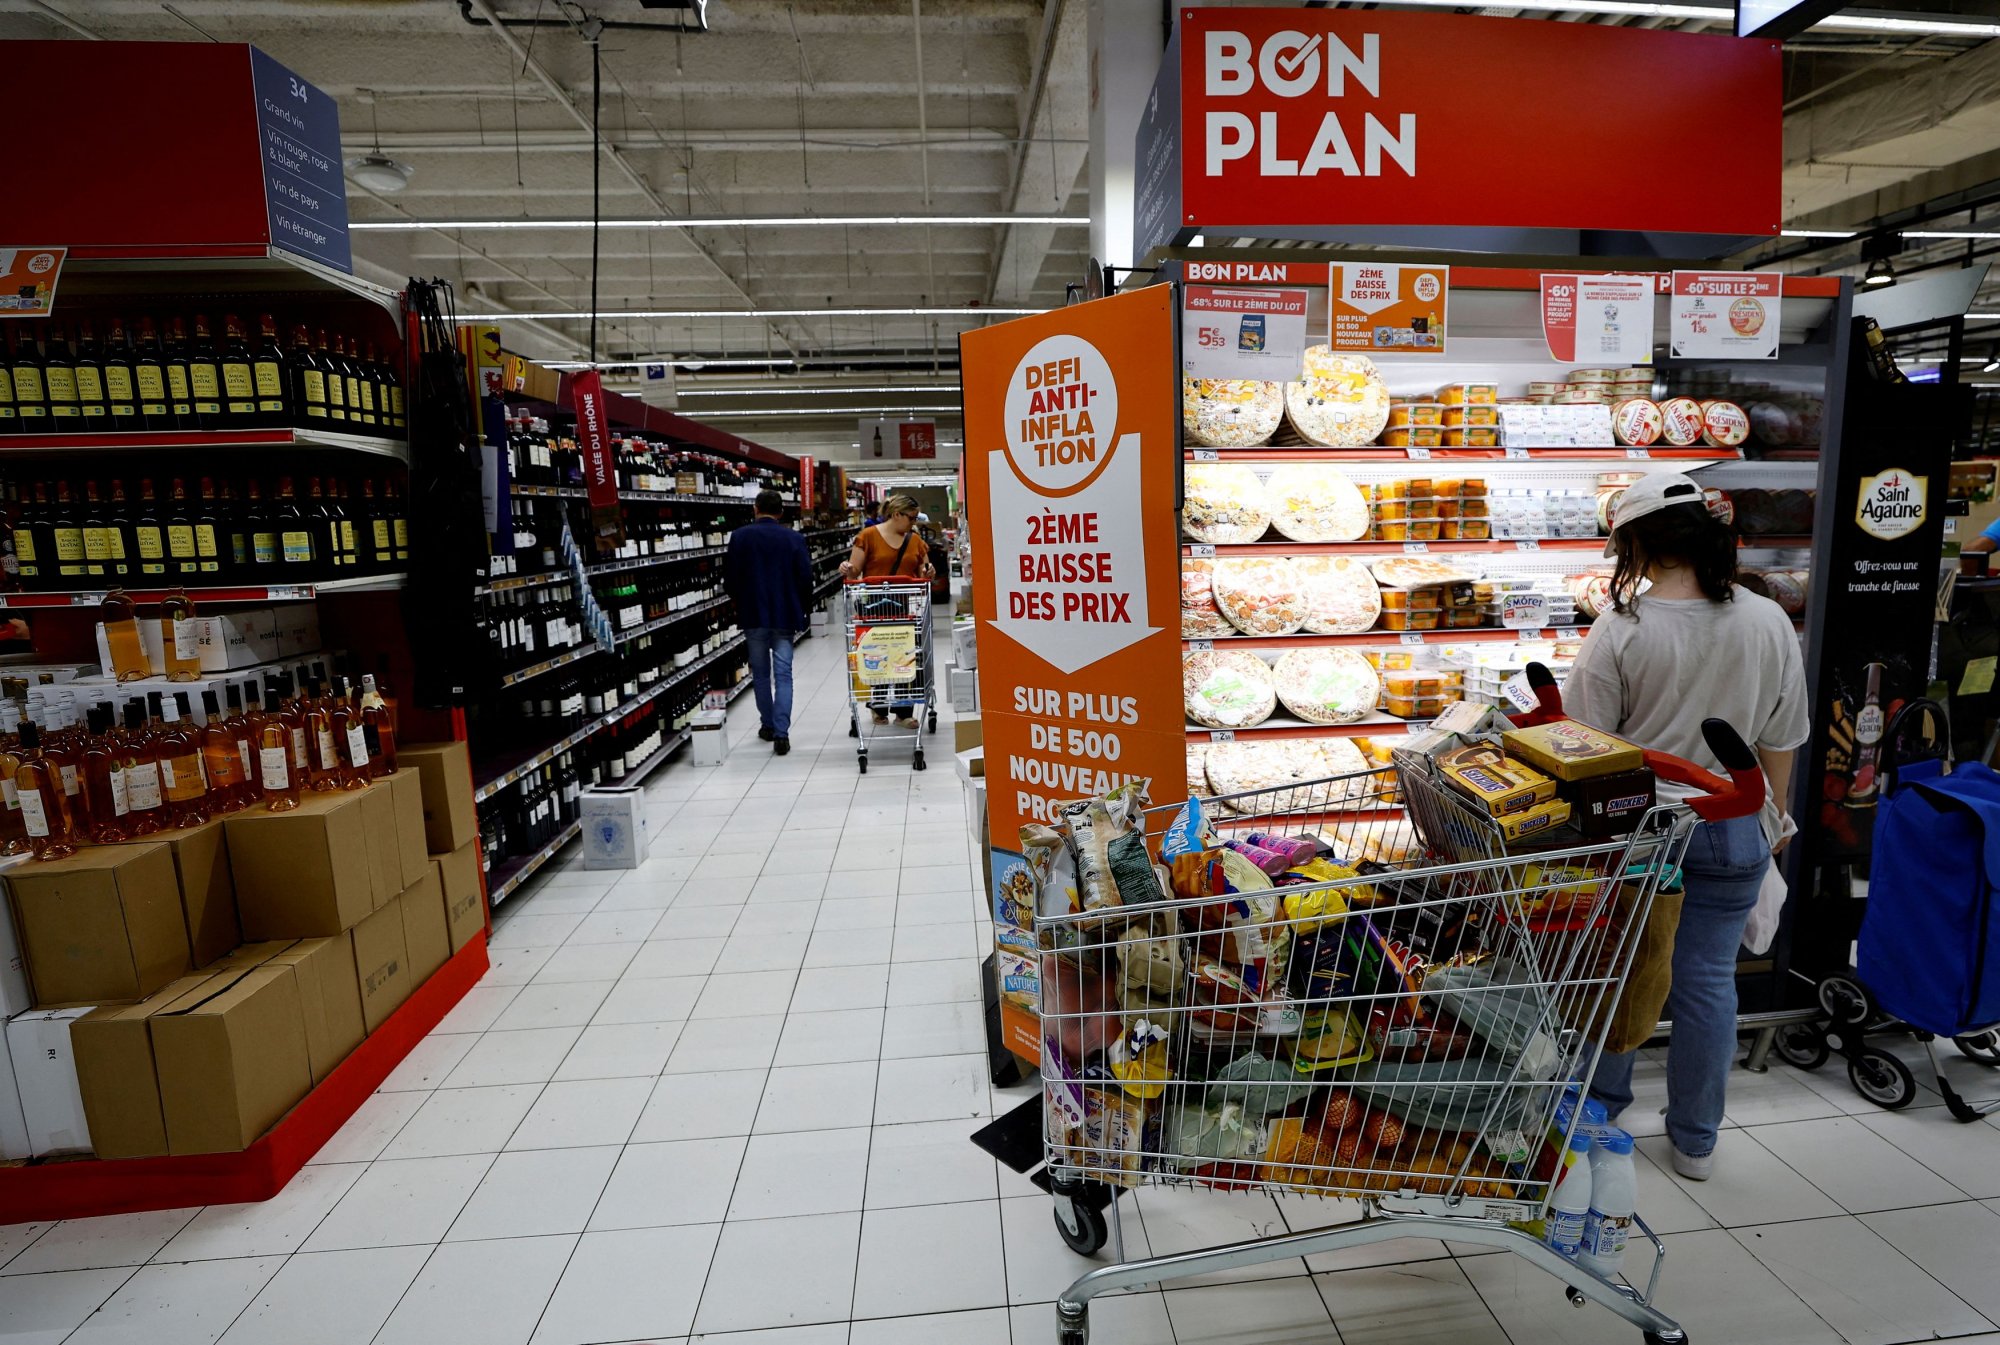 Γαλλία: Οι καταναλωτές αρχίζουν να γυρίζουν την πλάτη σε επώνυμα προϊόντα στα σουπερμάρκετ [γράφημα]